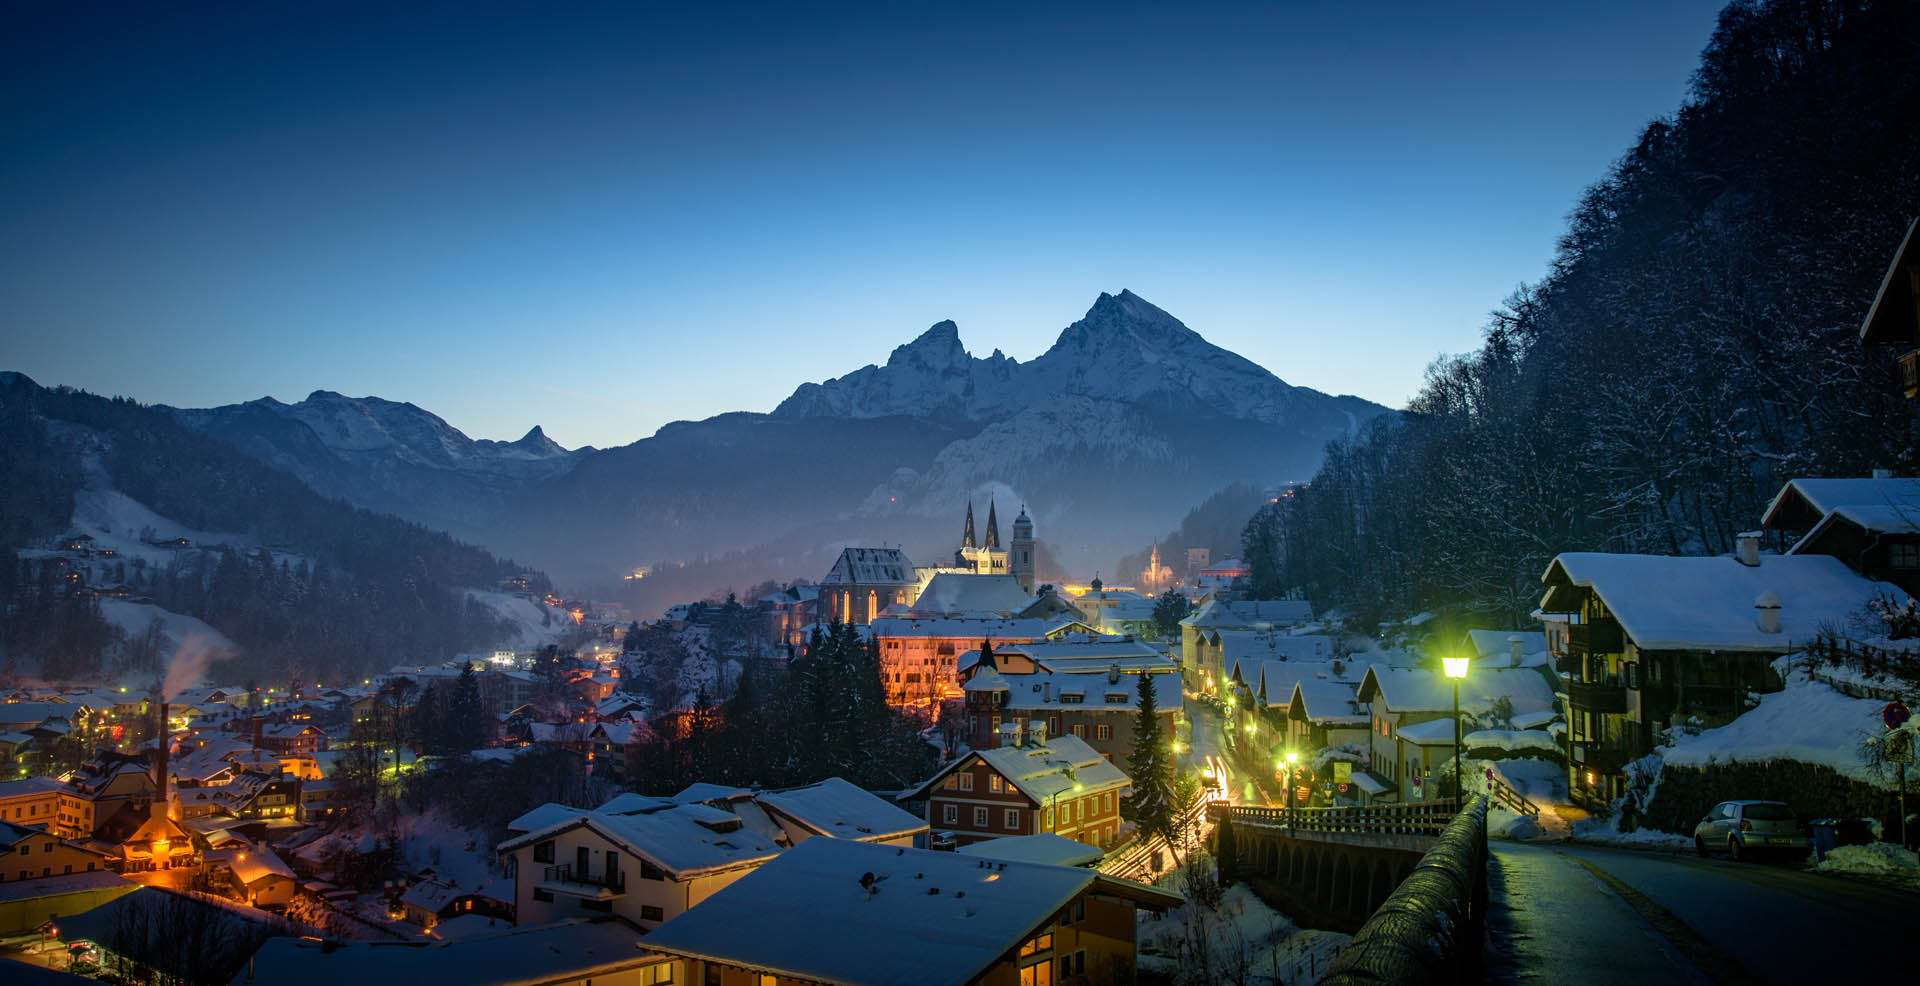 Haus Alpengruss Bischofswiesen, Markt Berchtesgaden im Winter Nachtaufnahme